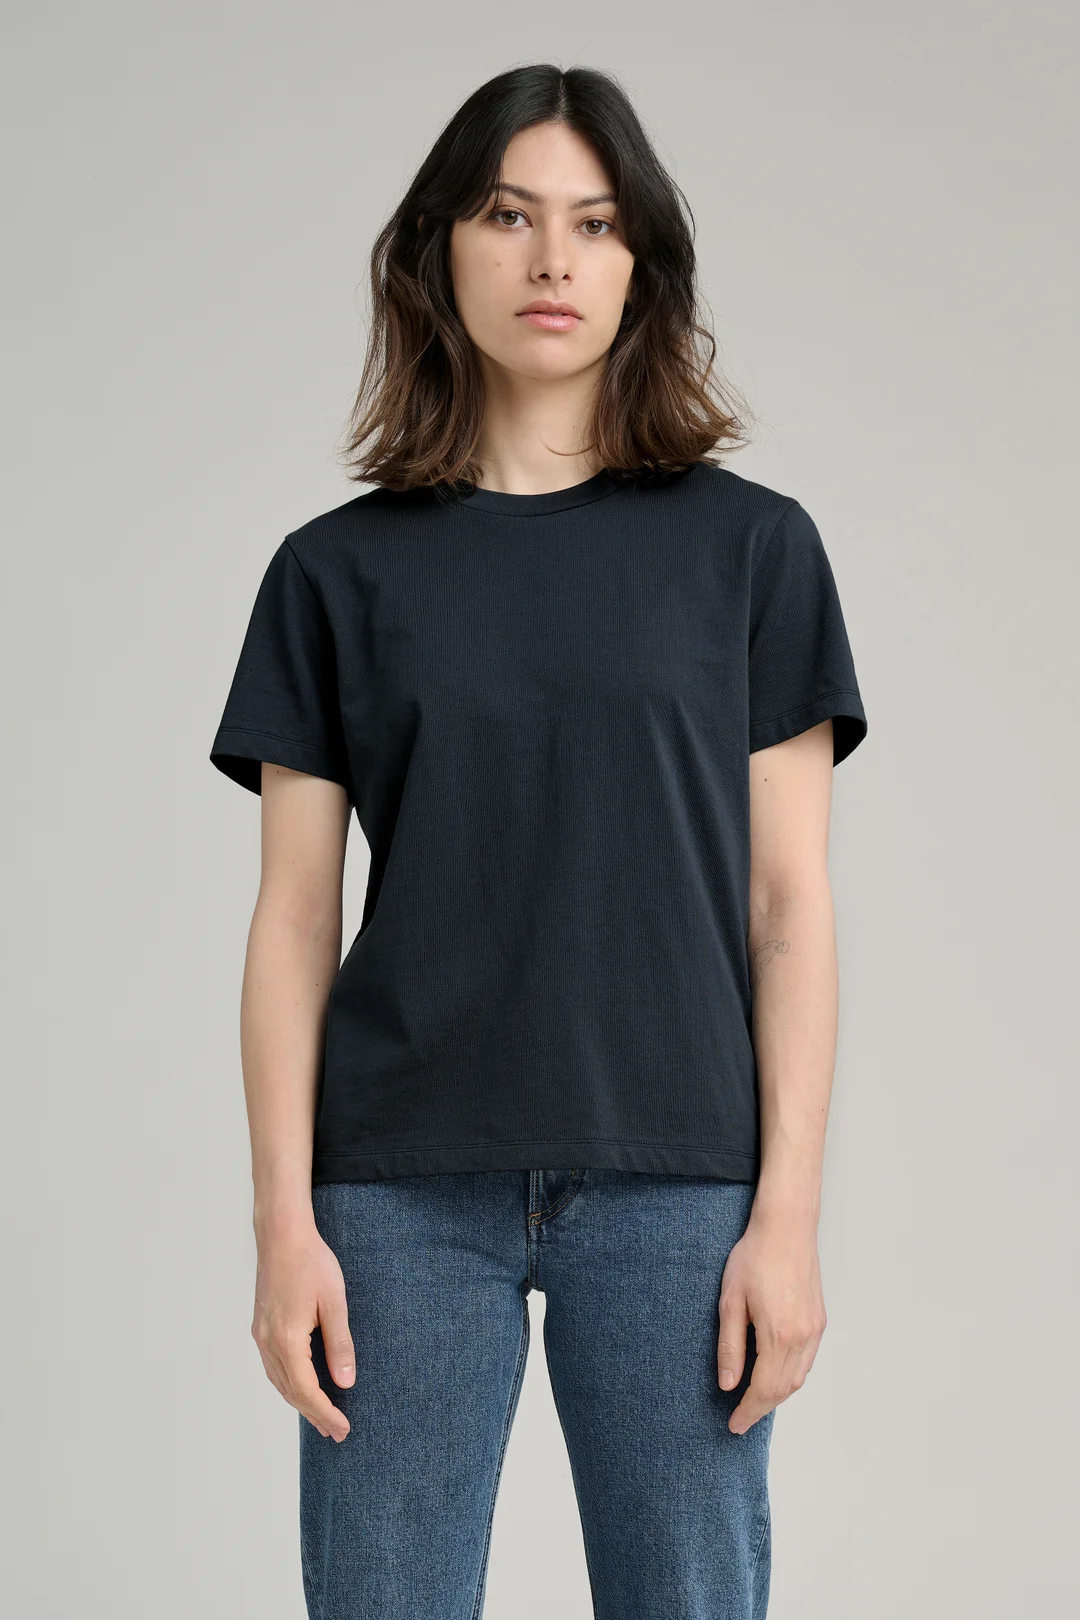 Dark Navy T-Shirt | Organic Cotton Crewneck - ASKET